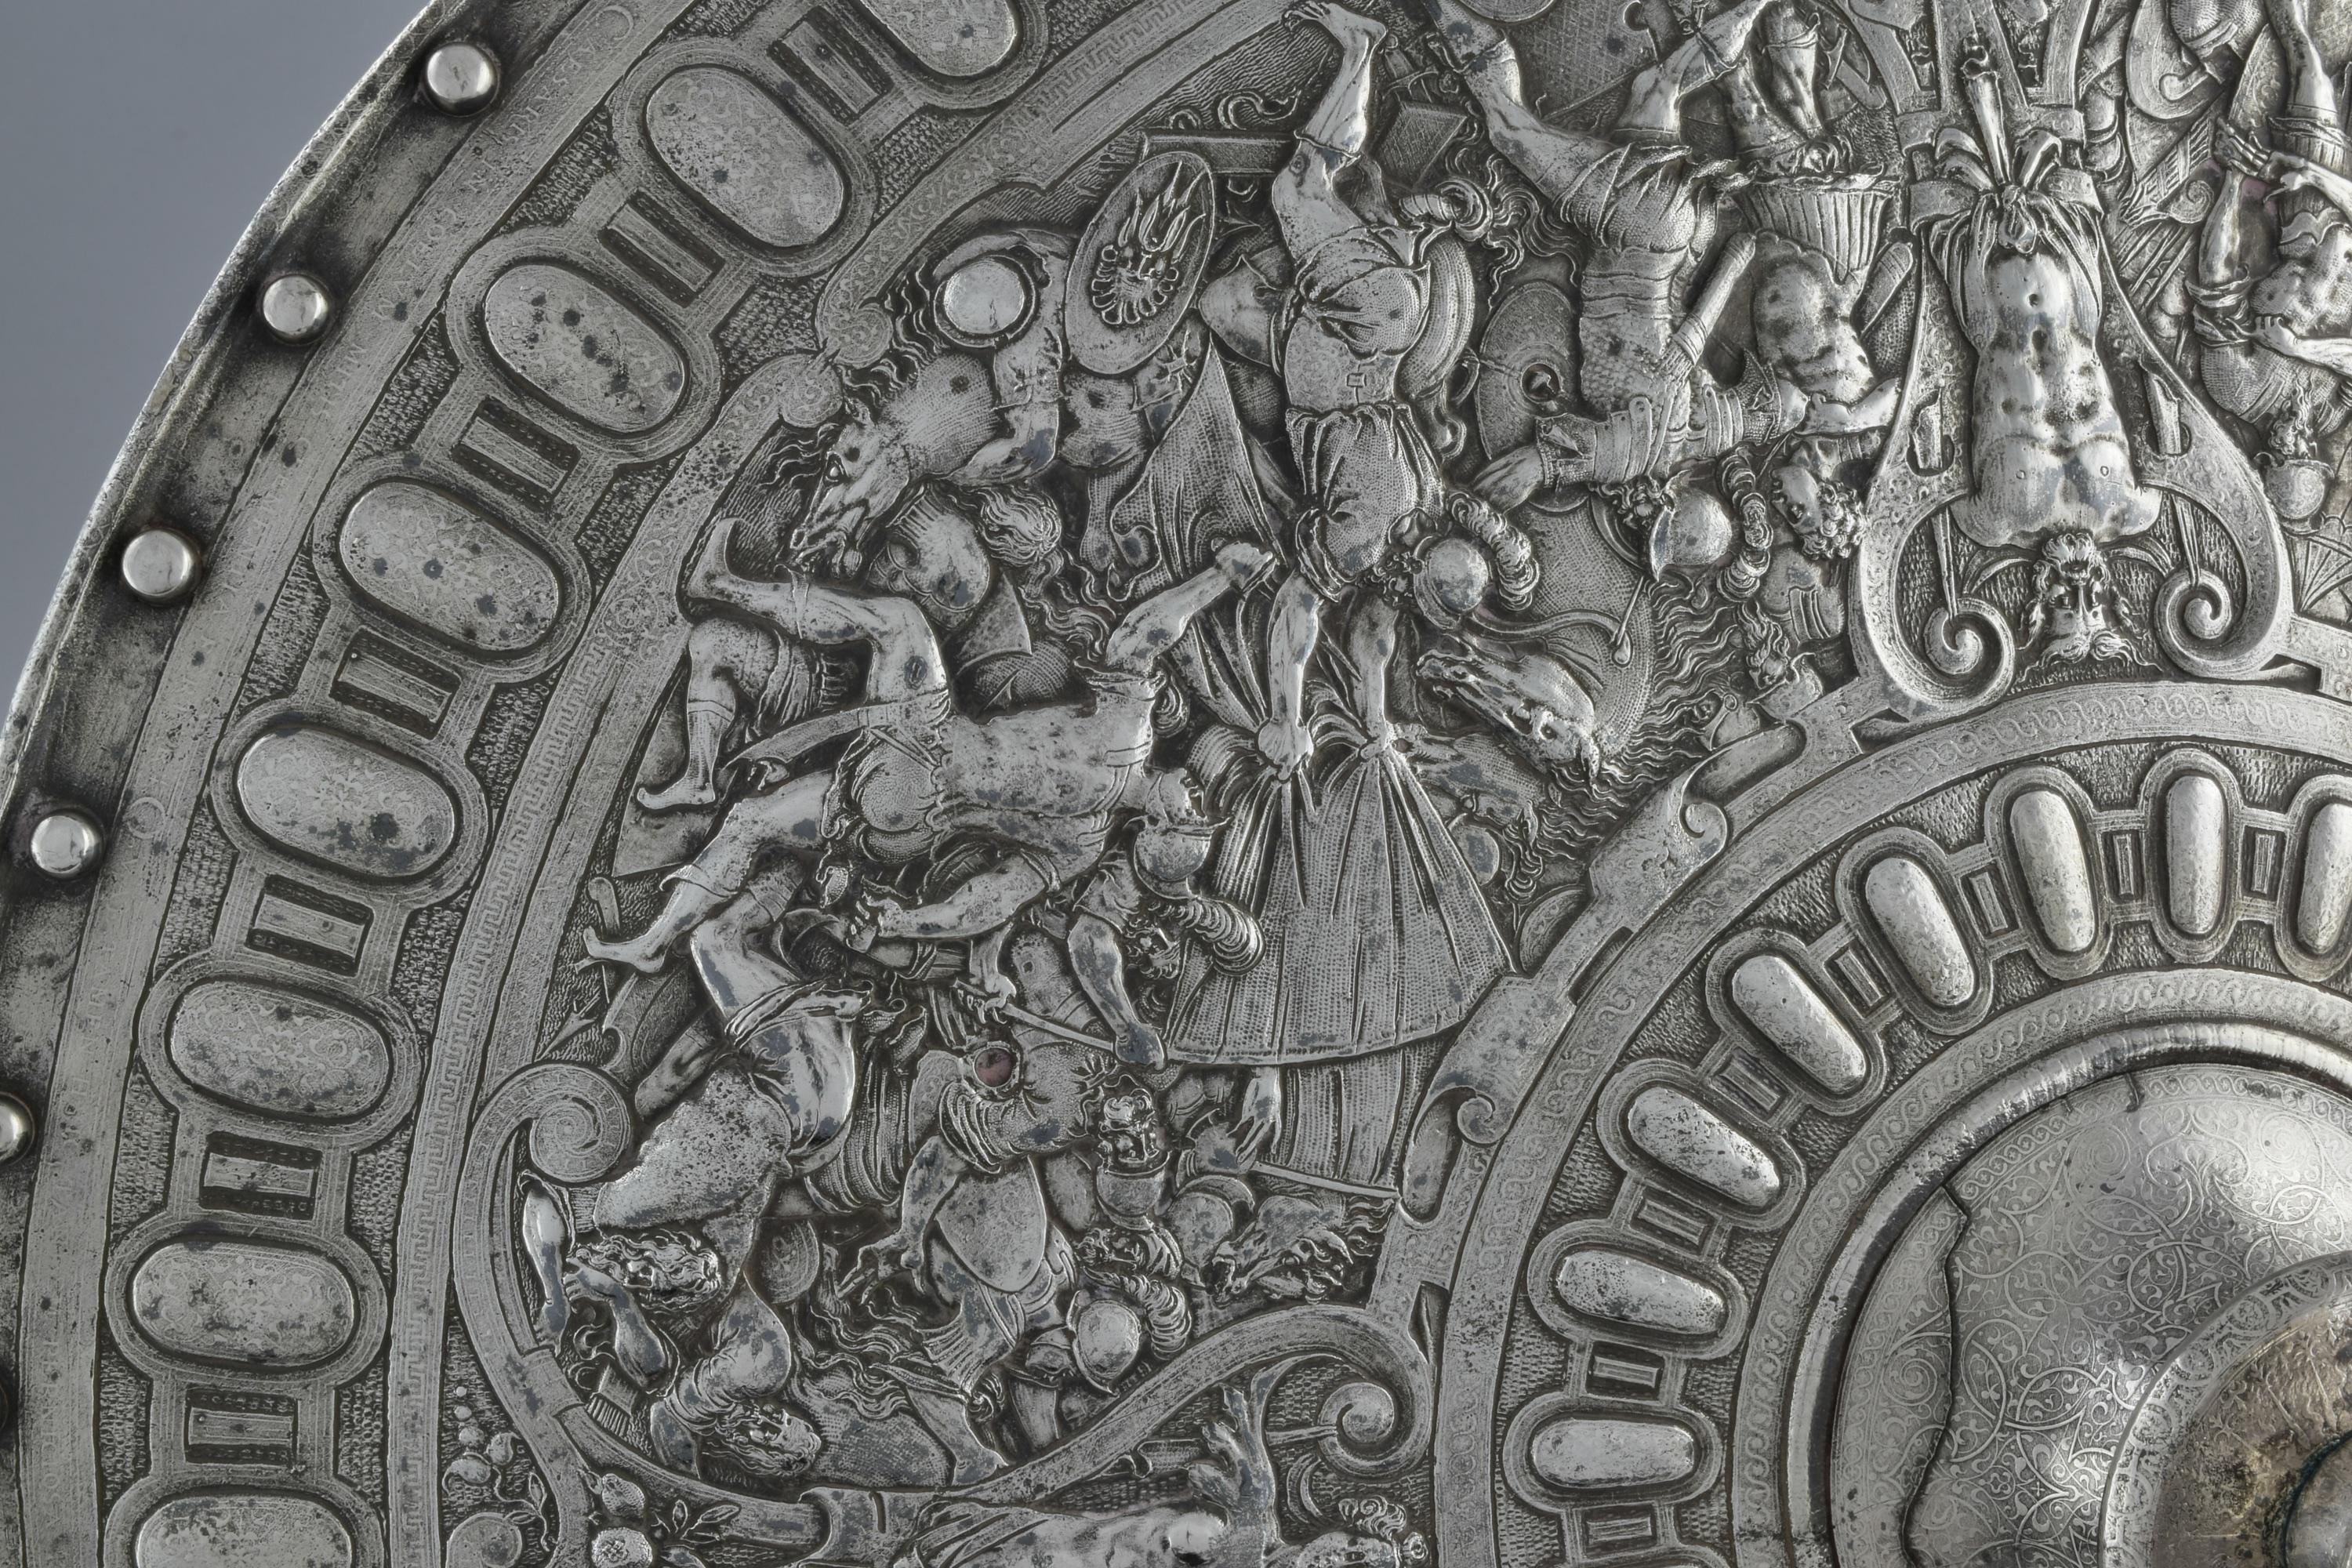 Bouclier circulaire représentant des scènes de bataille classiques. Un autre exemple similaire se trouve au Metropolitan Museum of Art Numéro d'accession : 07.102.7.

Biographie :

Elkington & Co, fondée en 1815, est le pionnier et l'inventeur du